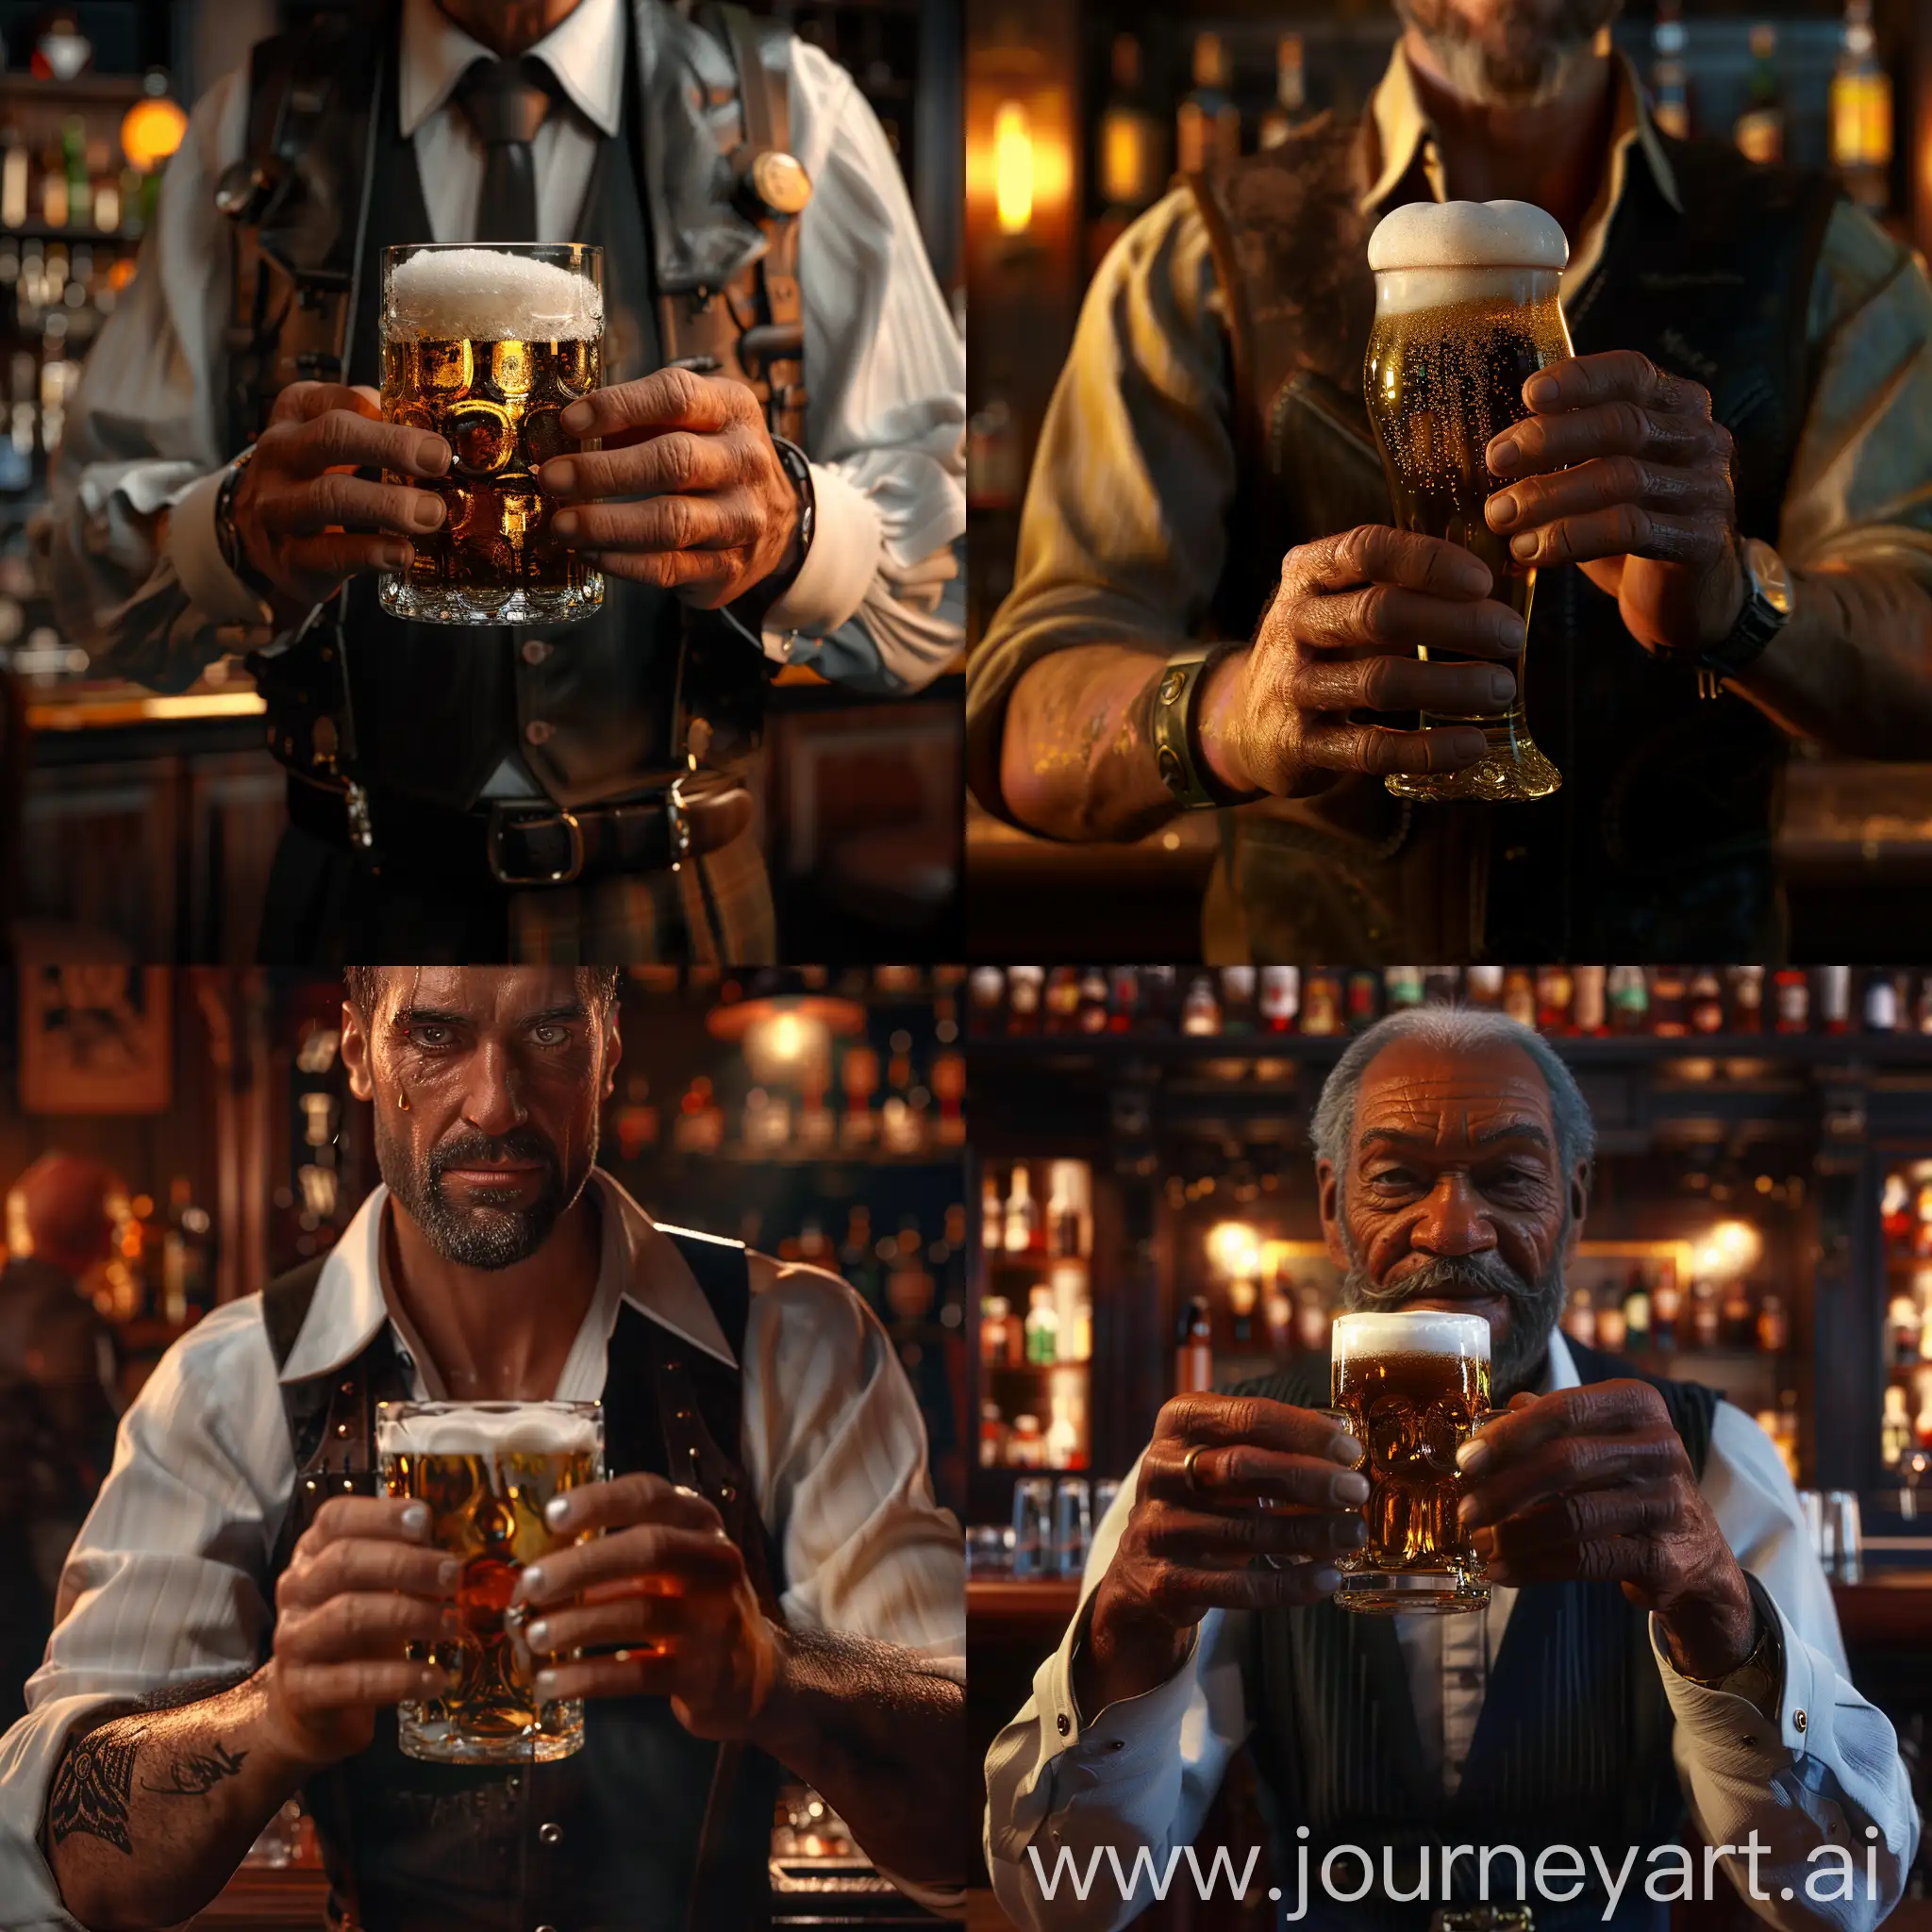 Артур Морган держит в руках бокал пиво, задний фон бар, крупный план, гипер реализм, 8к, профессиональное освещение